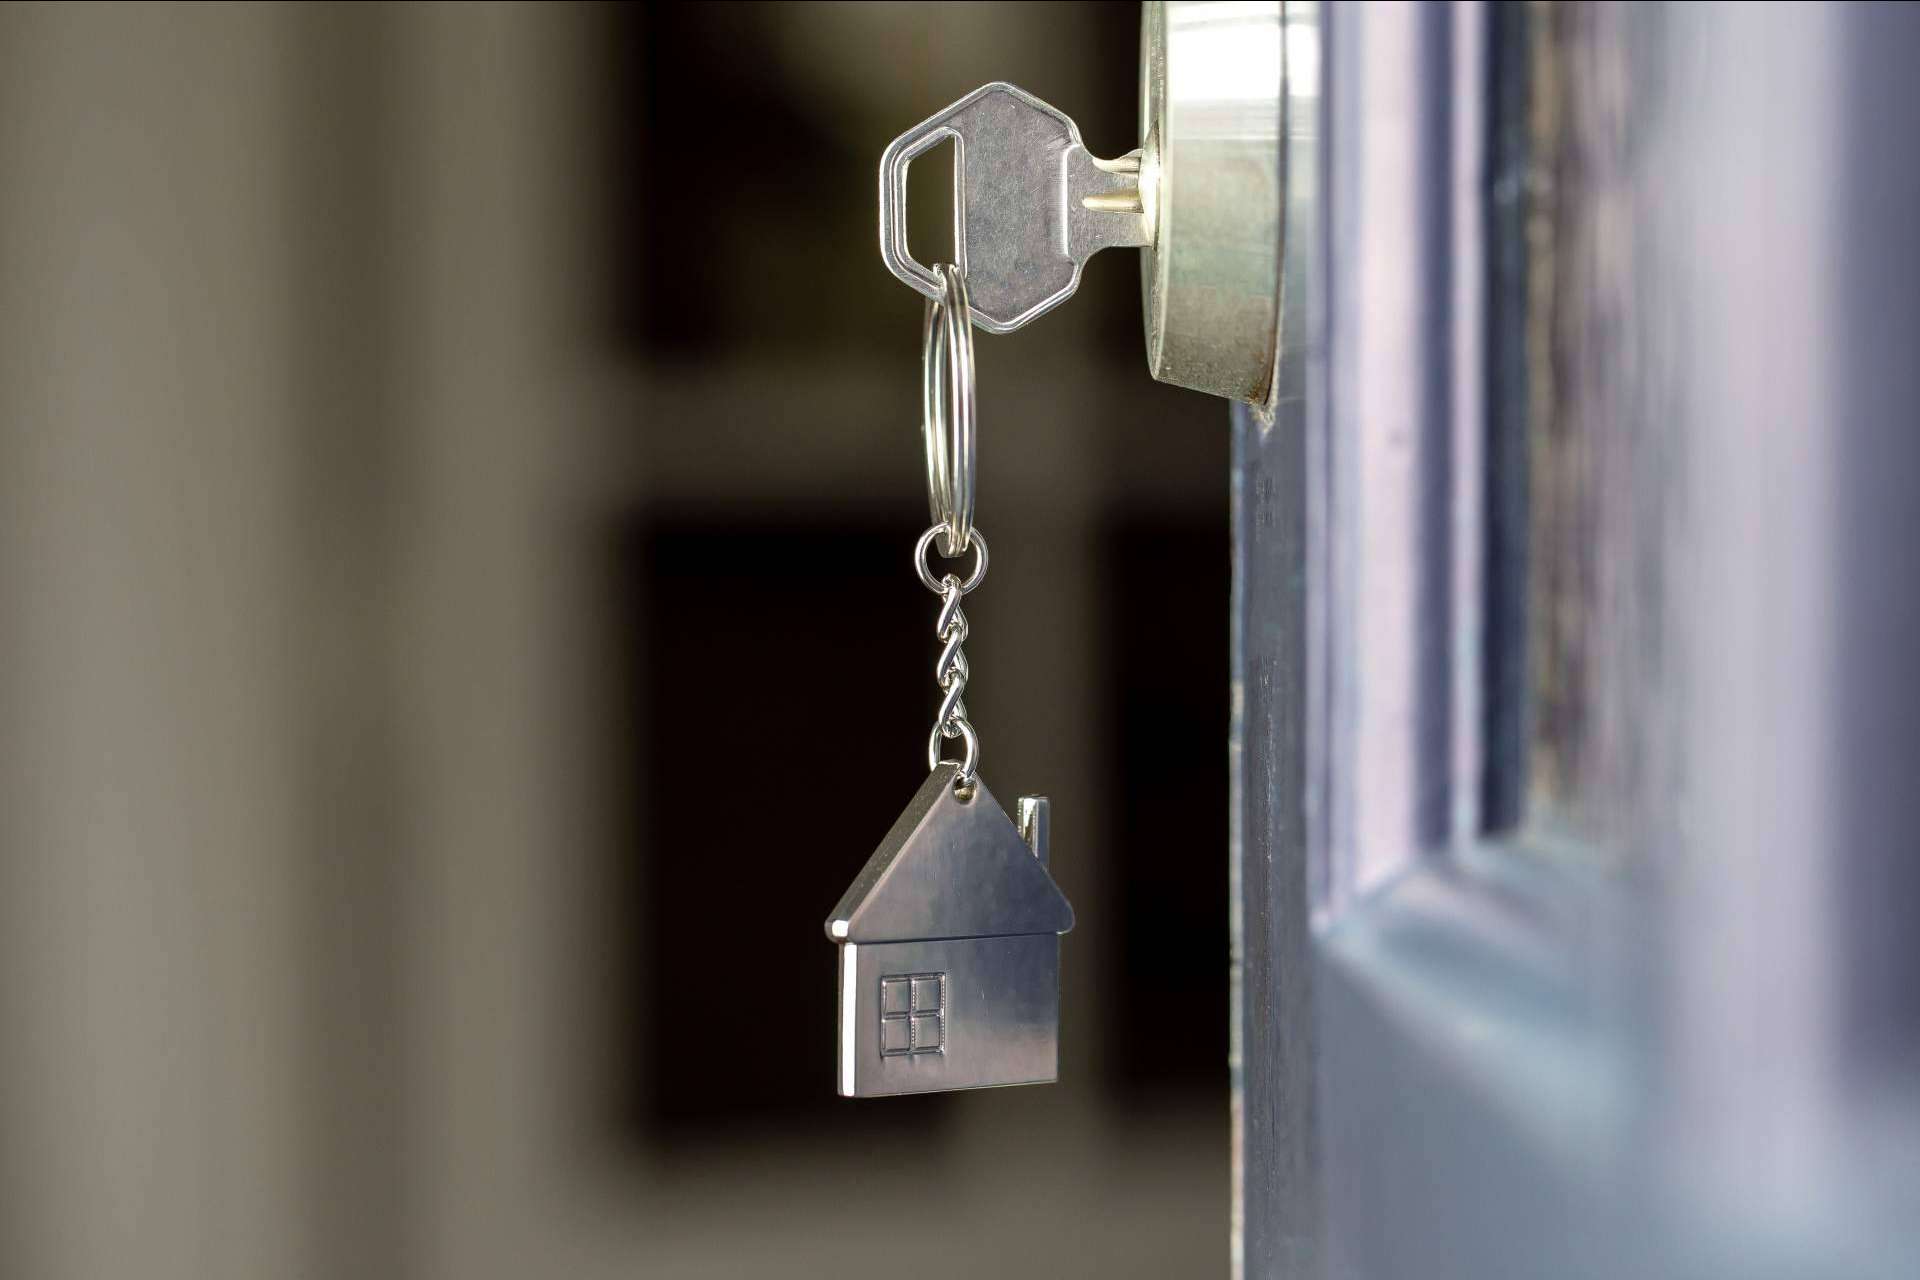 ¿Qué hay que tener en cuenta cuando se compra una vivienda de segunda mano? ¿Cómo puede ayudar un intermediario hipotecario?